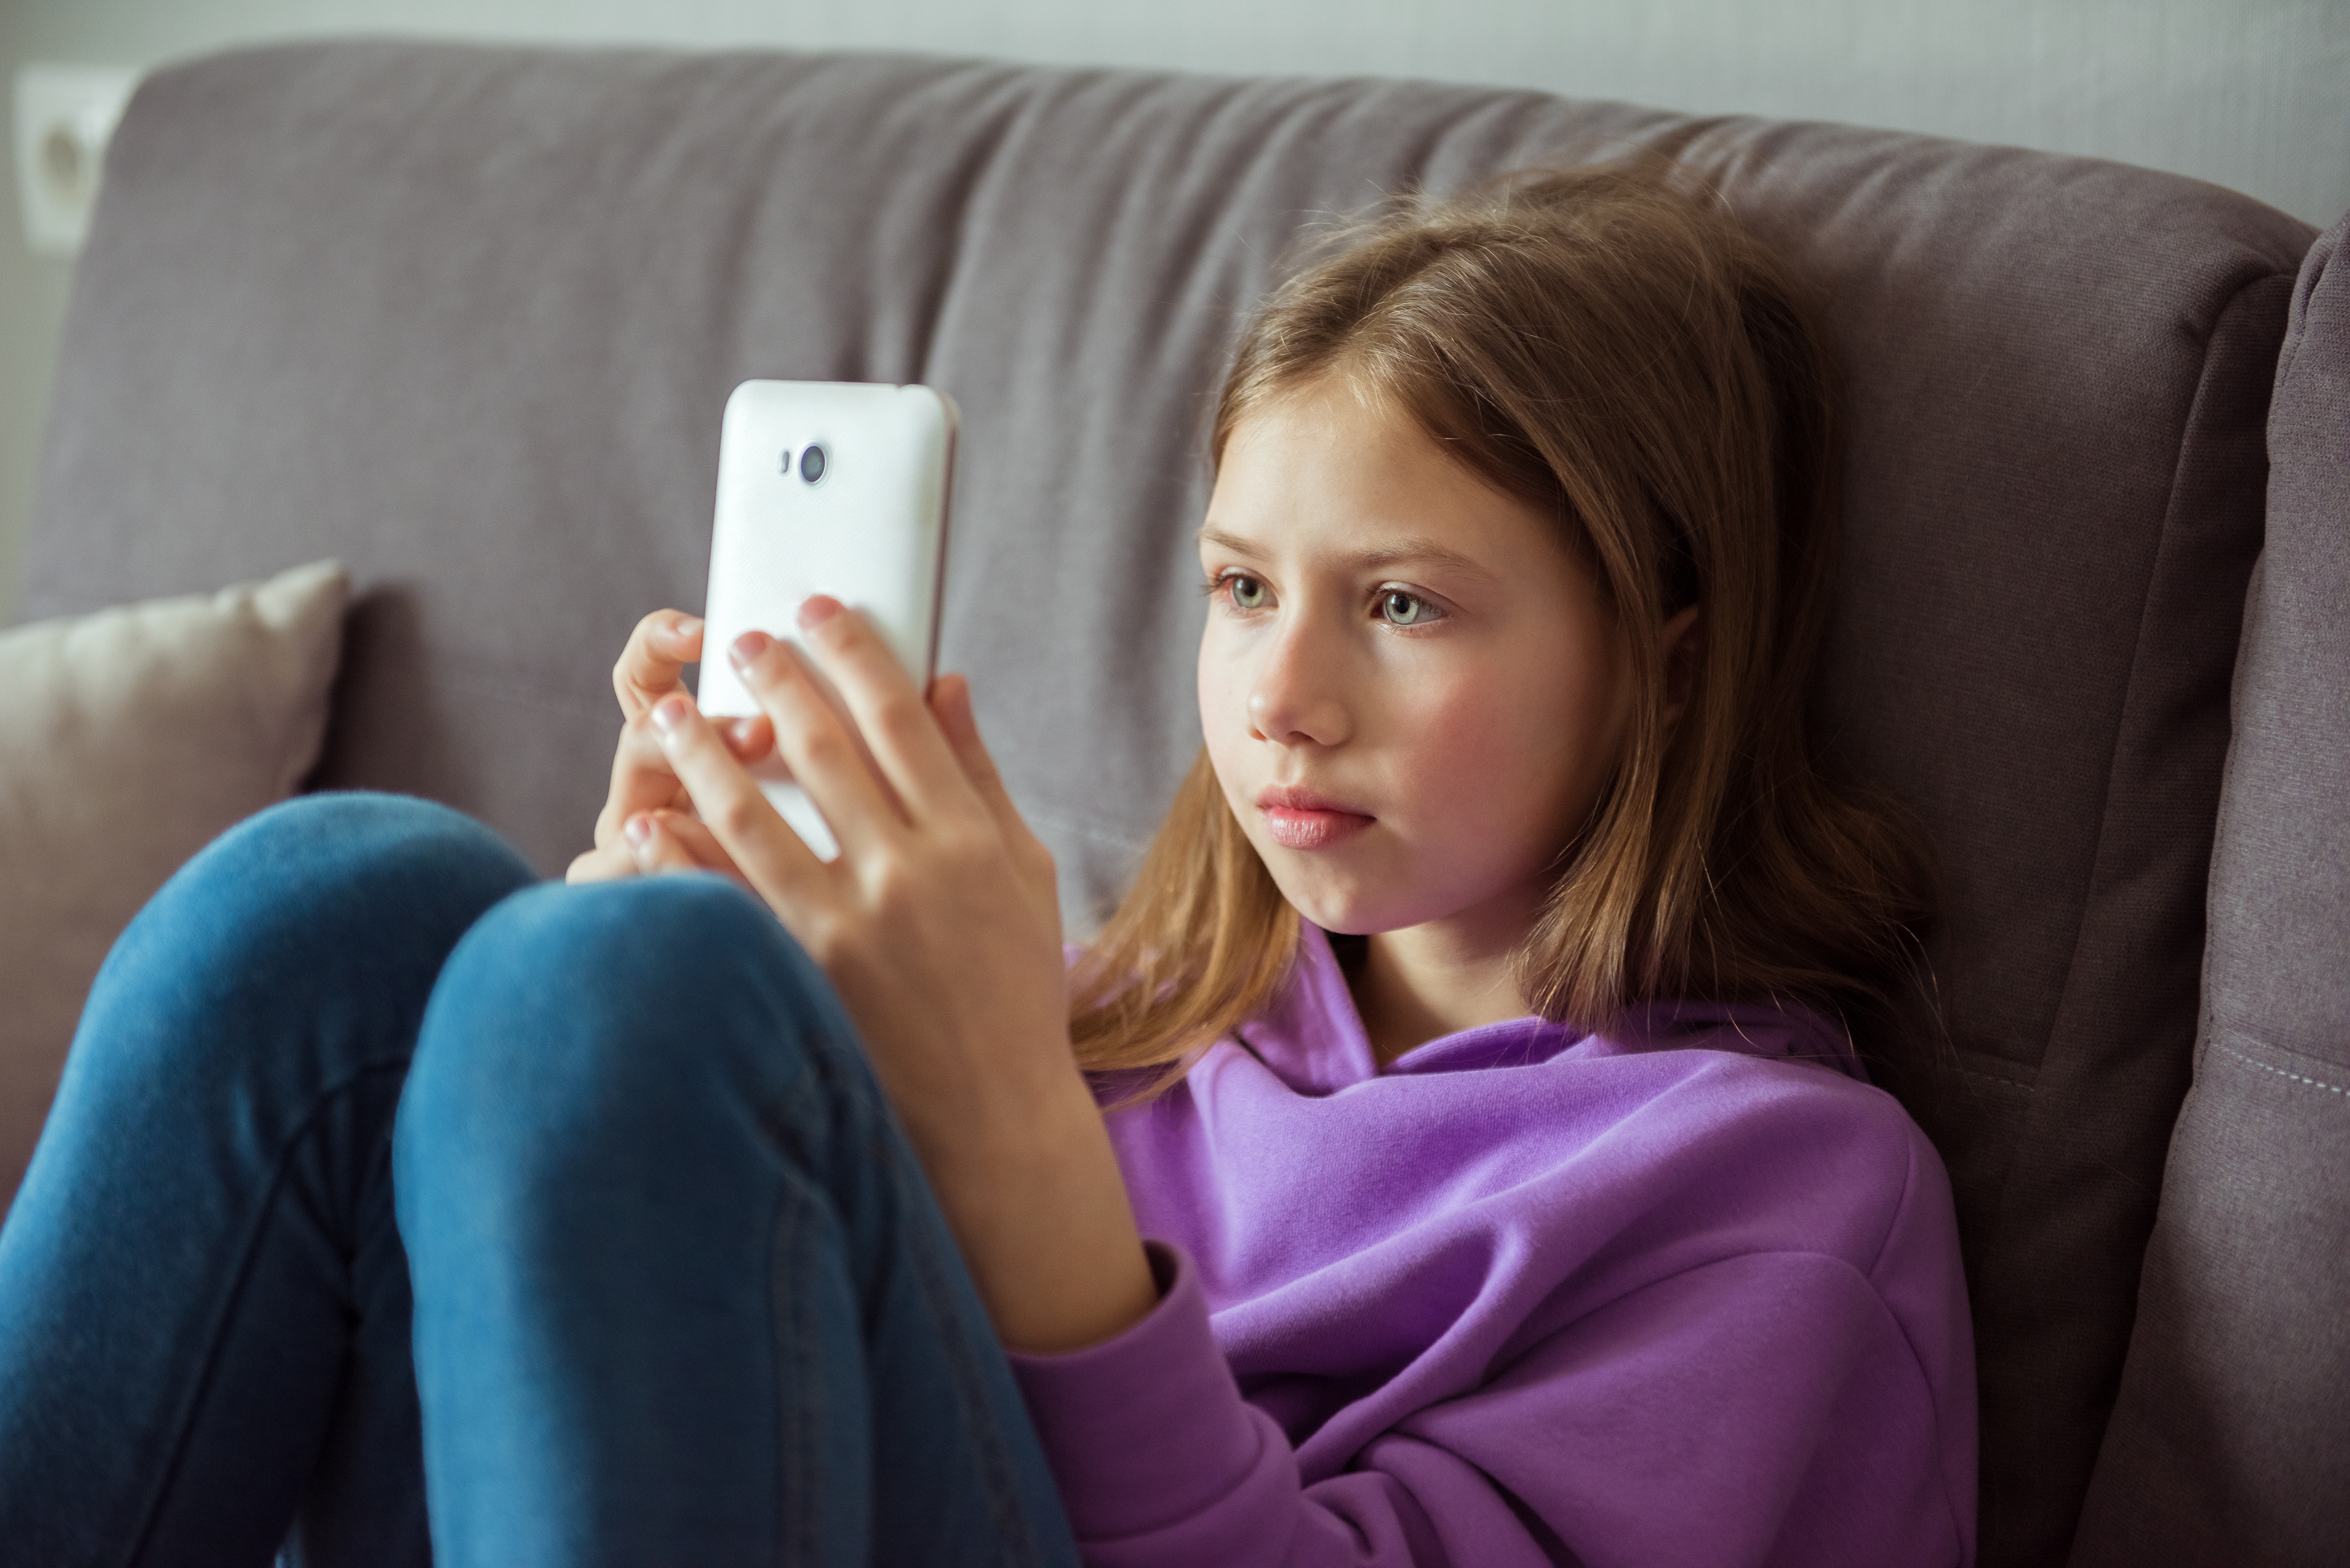 Une adolescente tient un téléphone portable | Source : Shutterstock